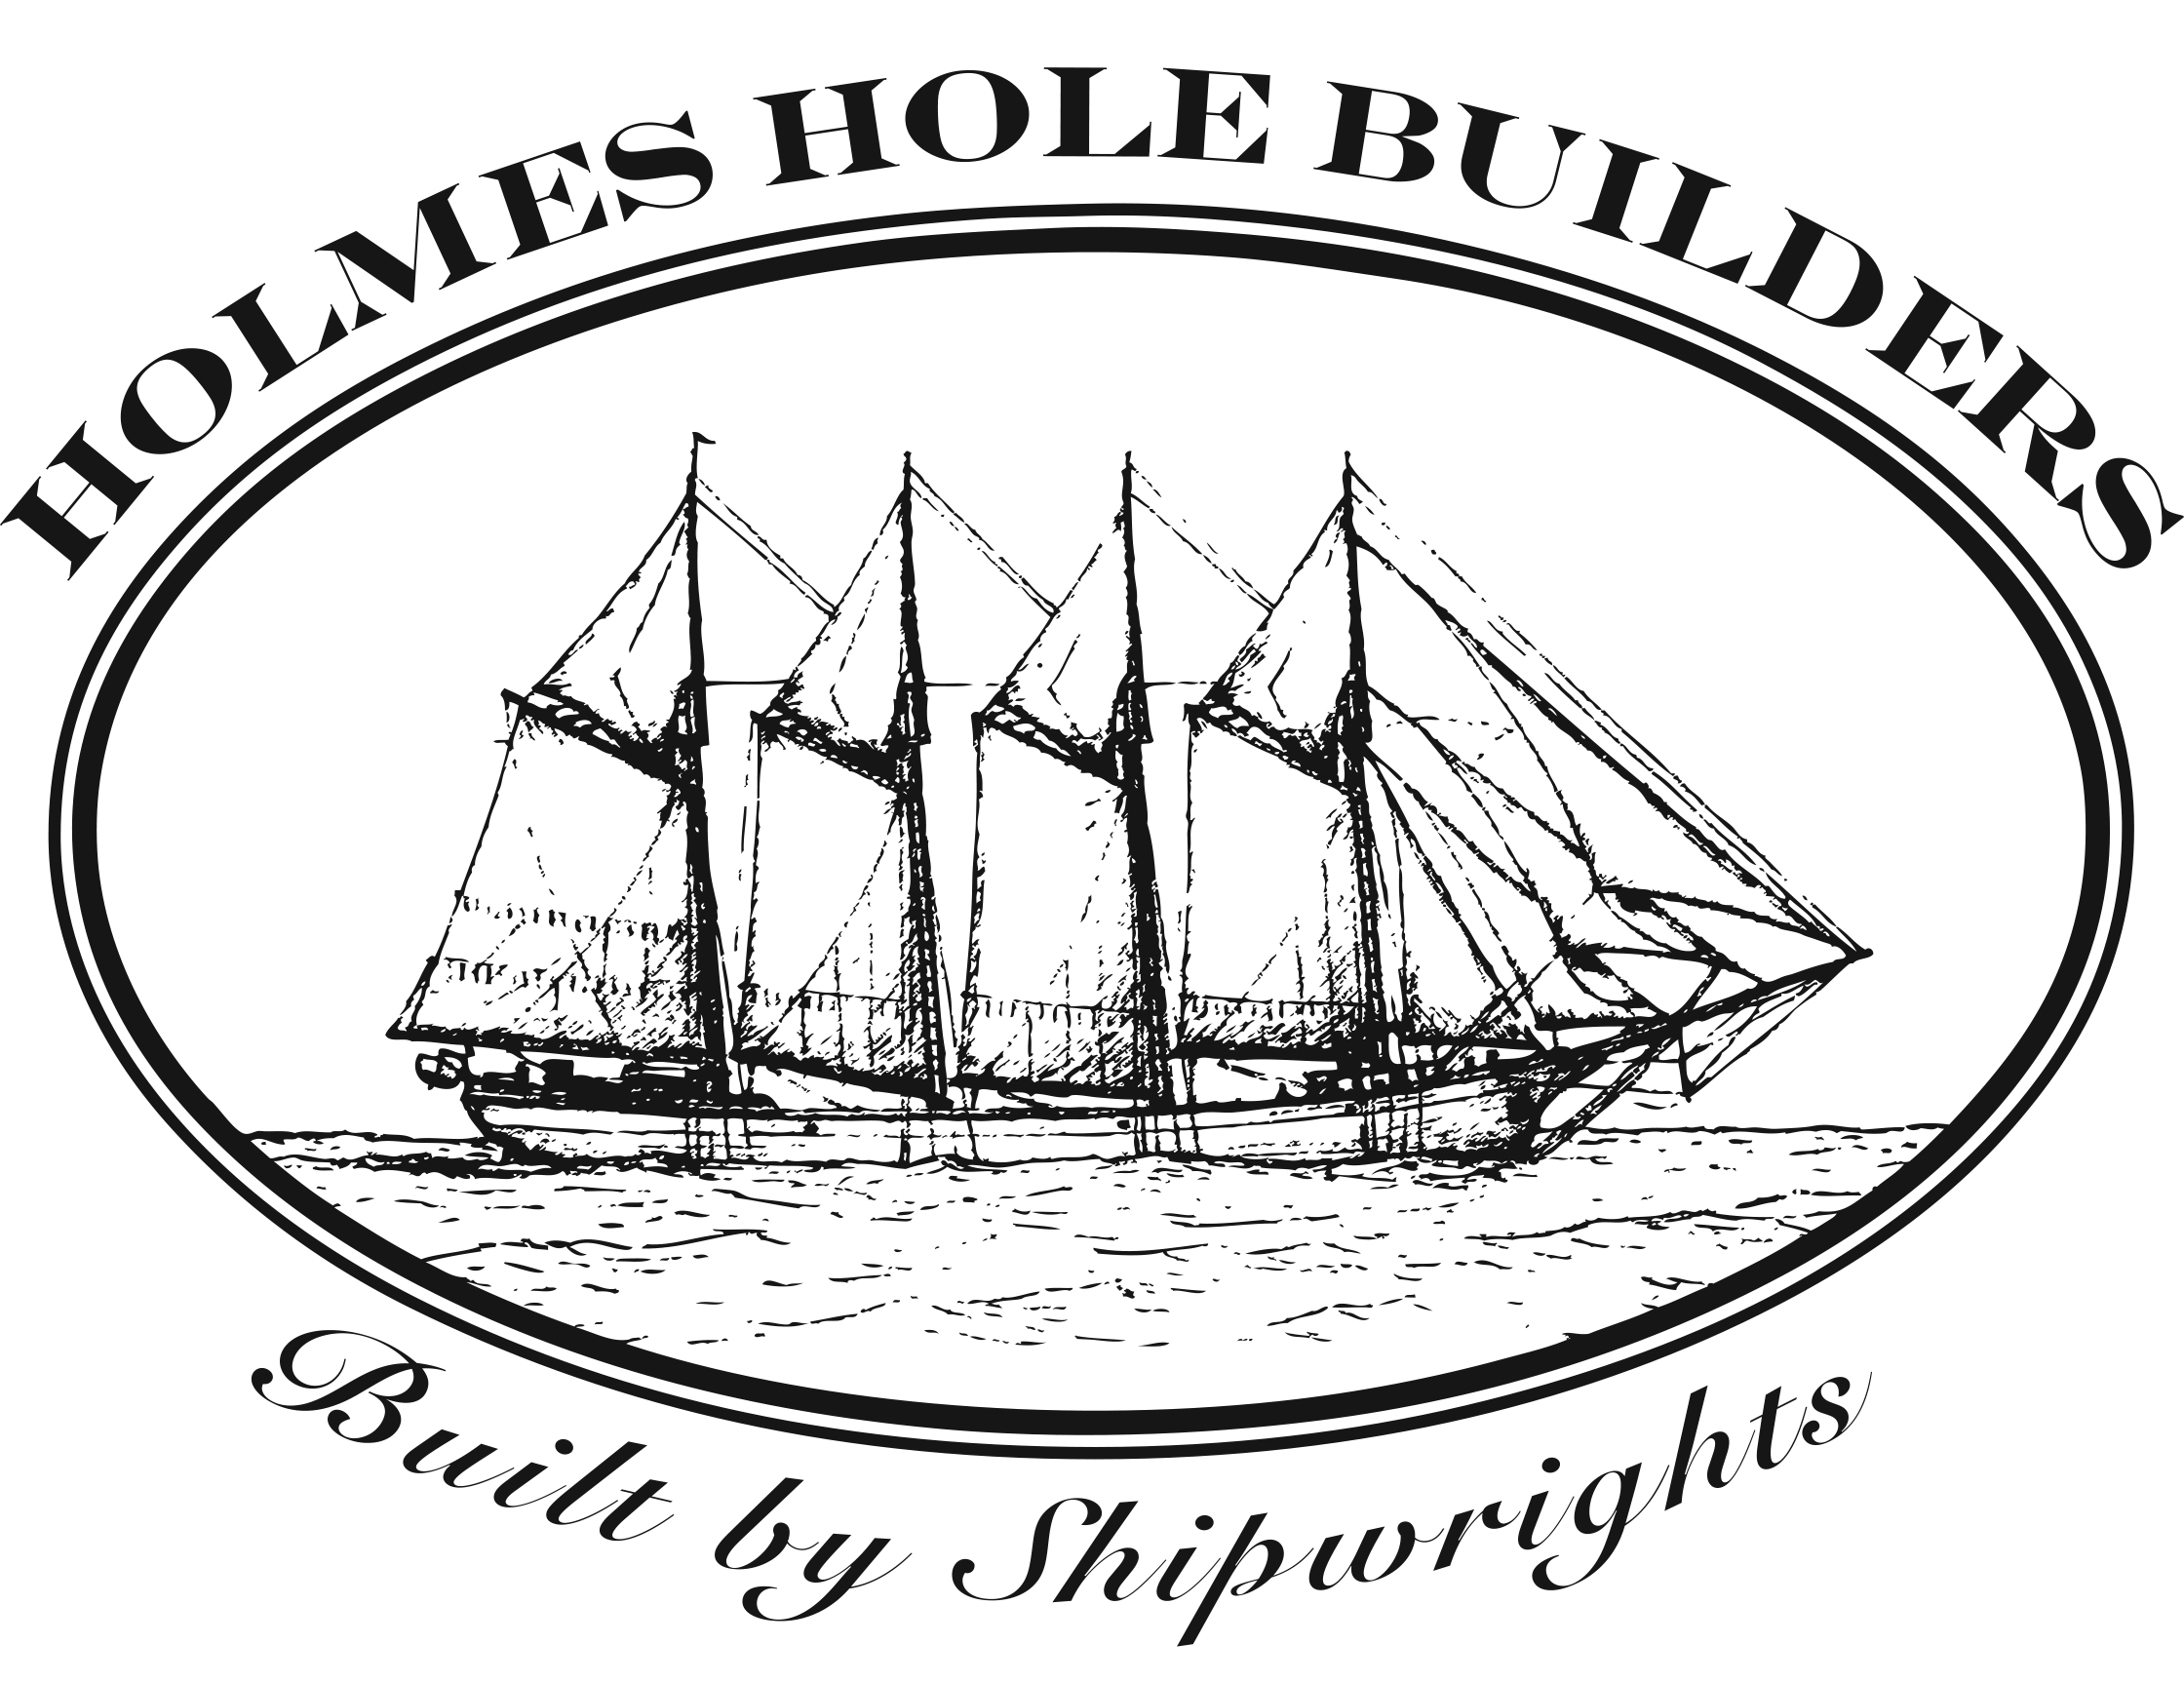 Holmes Holes Builders